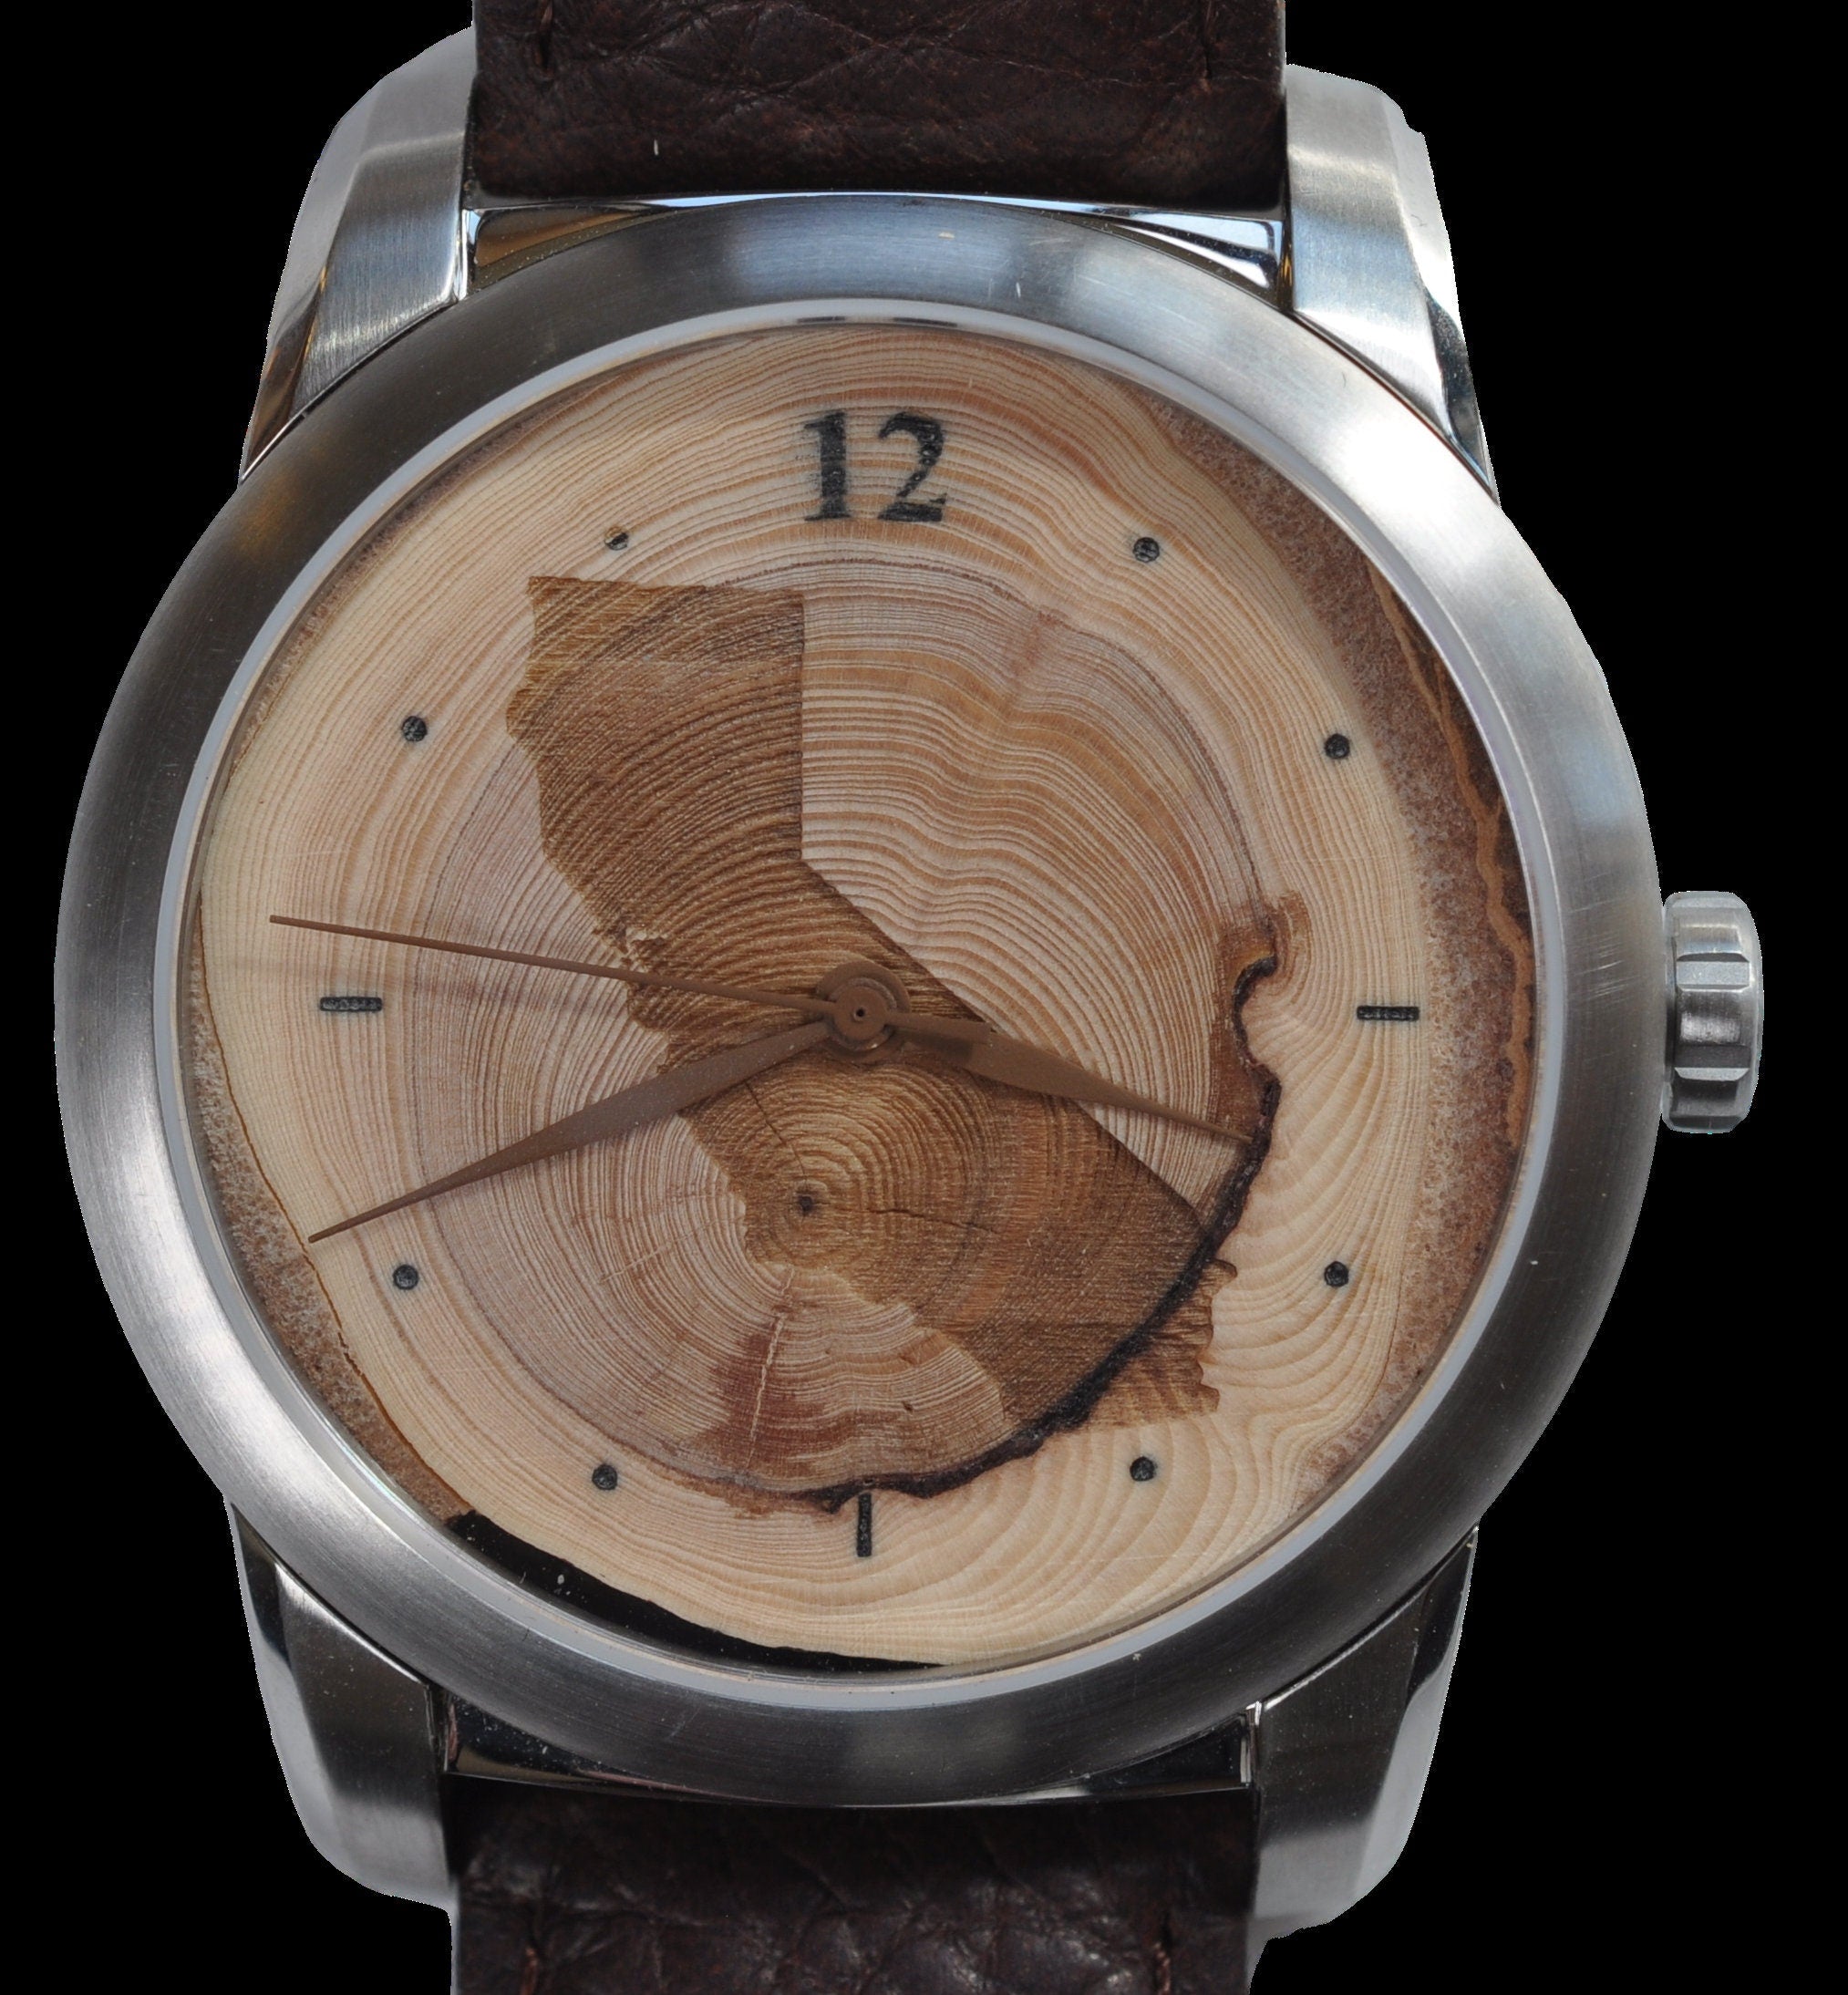 Groomsmen gift watch, groomsman watch, personalized watch